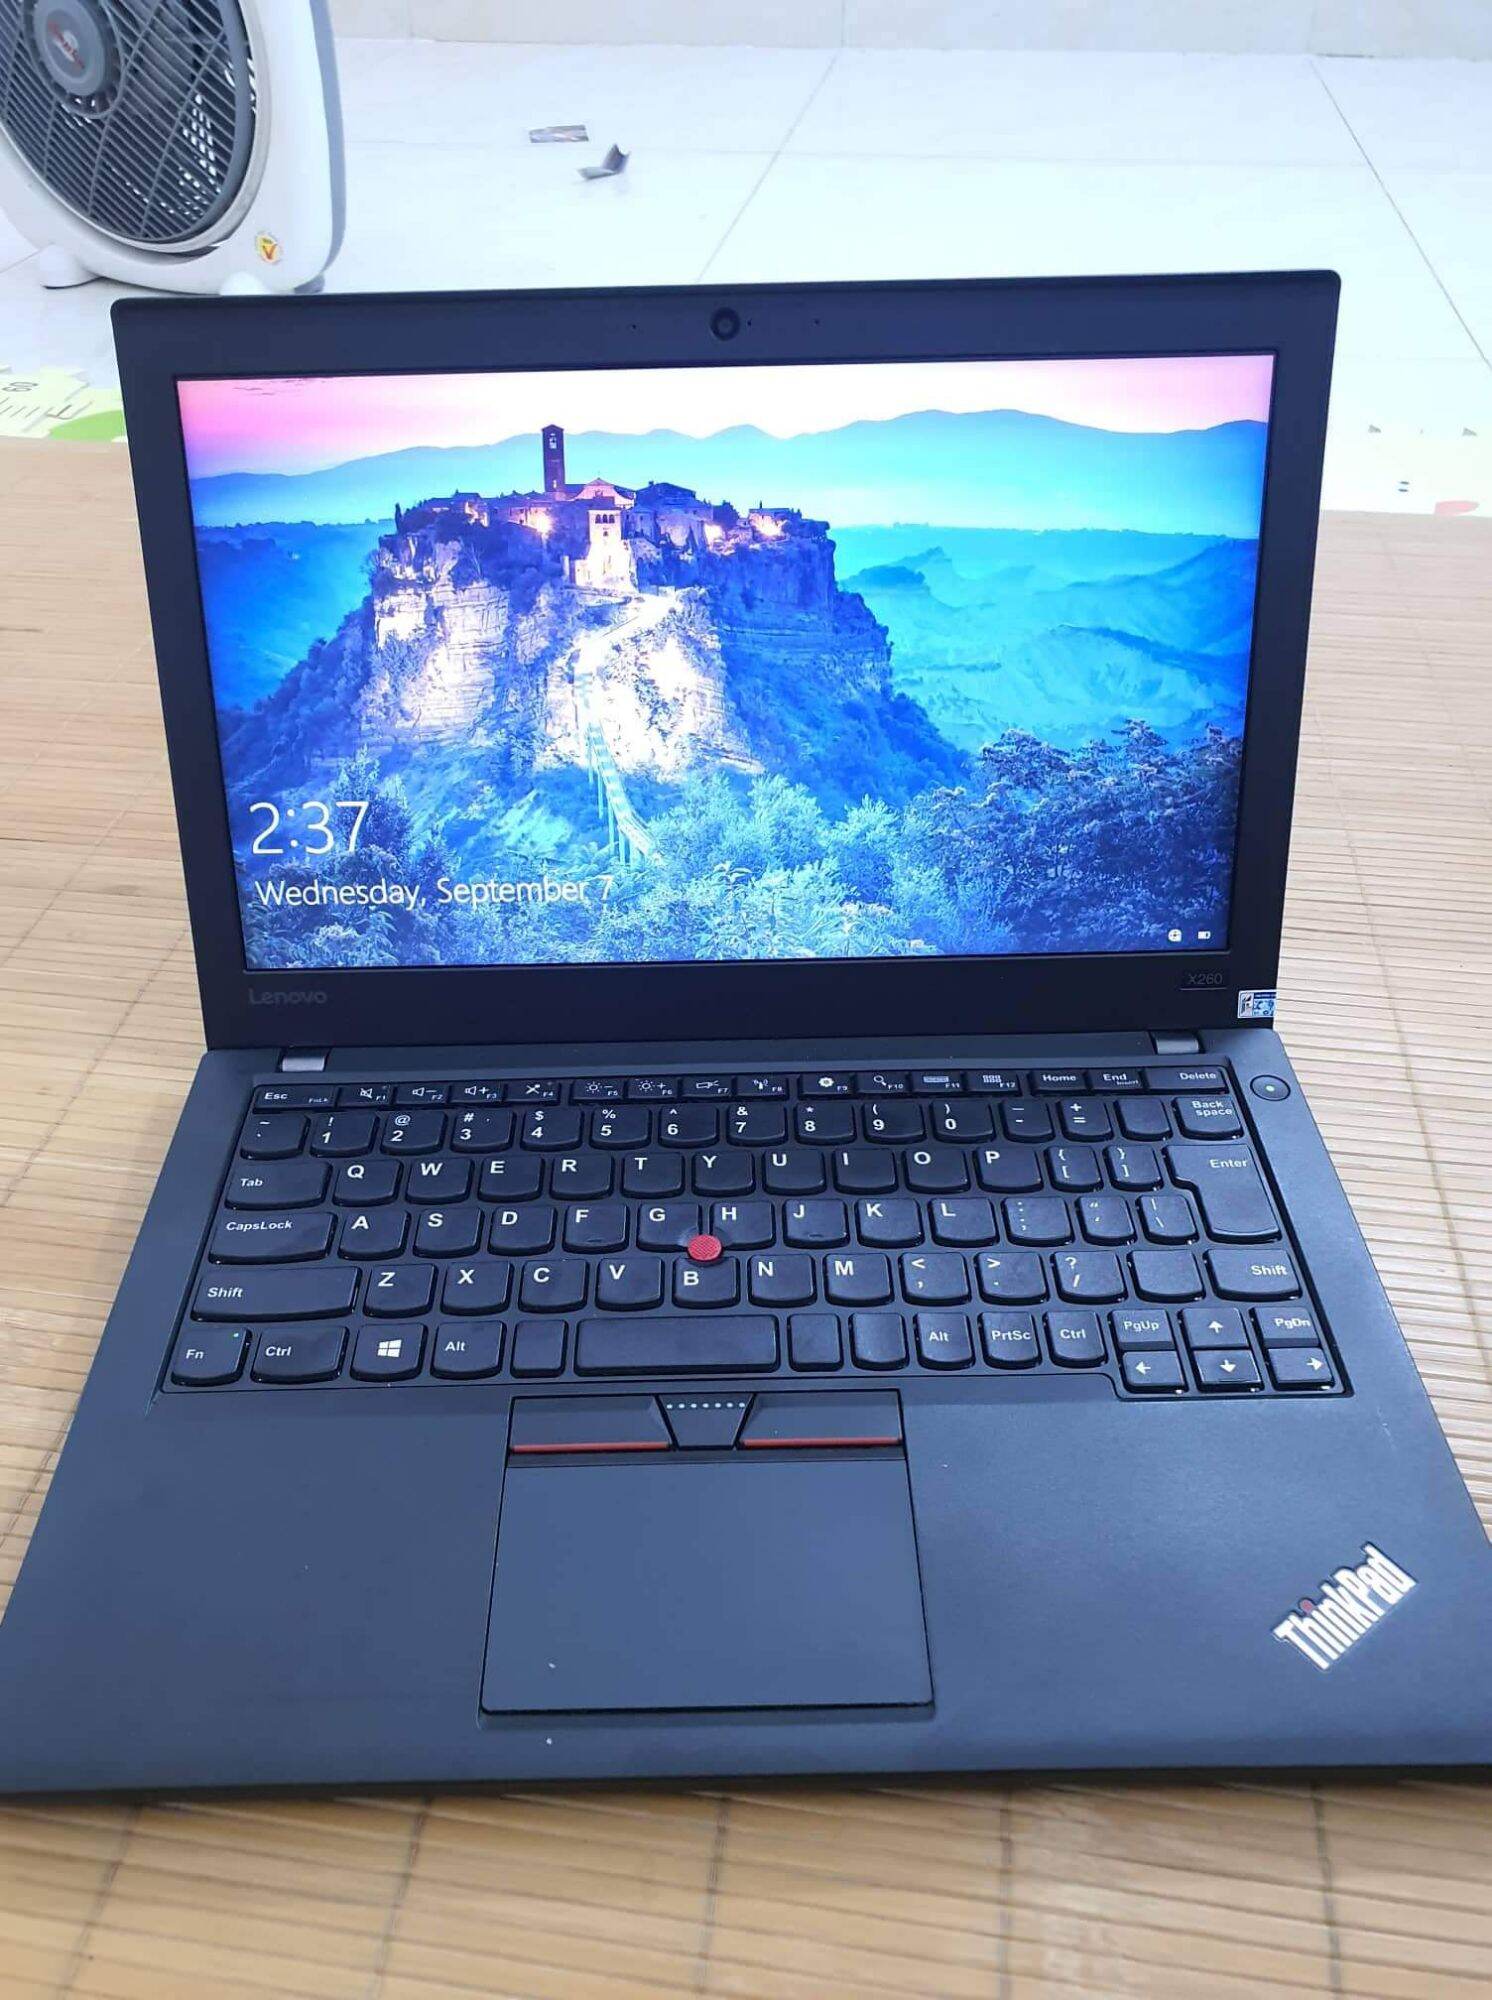 laptop ThinkPad 260 i5 ram 8 SSD 240 cấu hình cao giá rẻ bảo hành 1 đổi 1 thumbnail